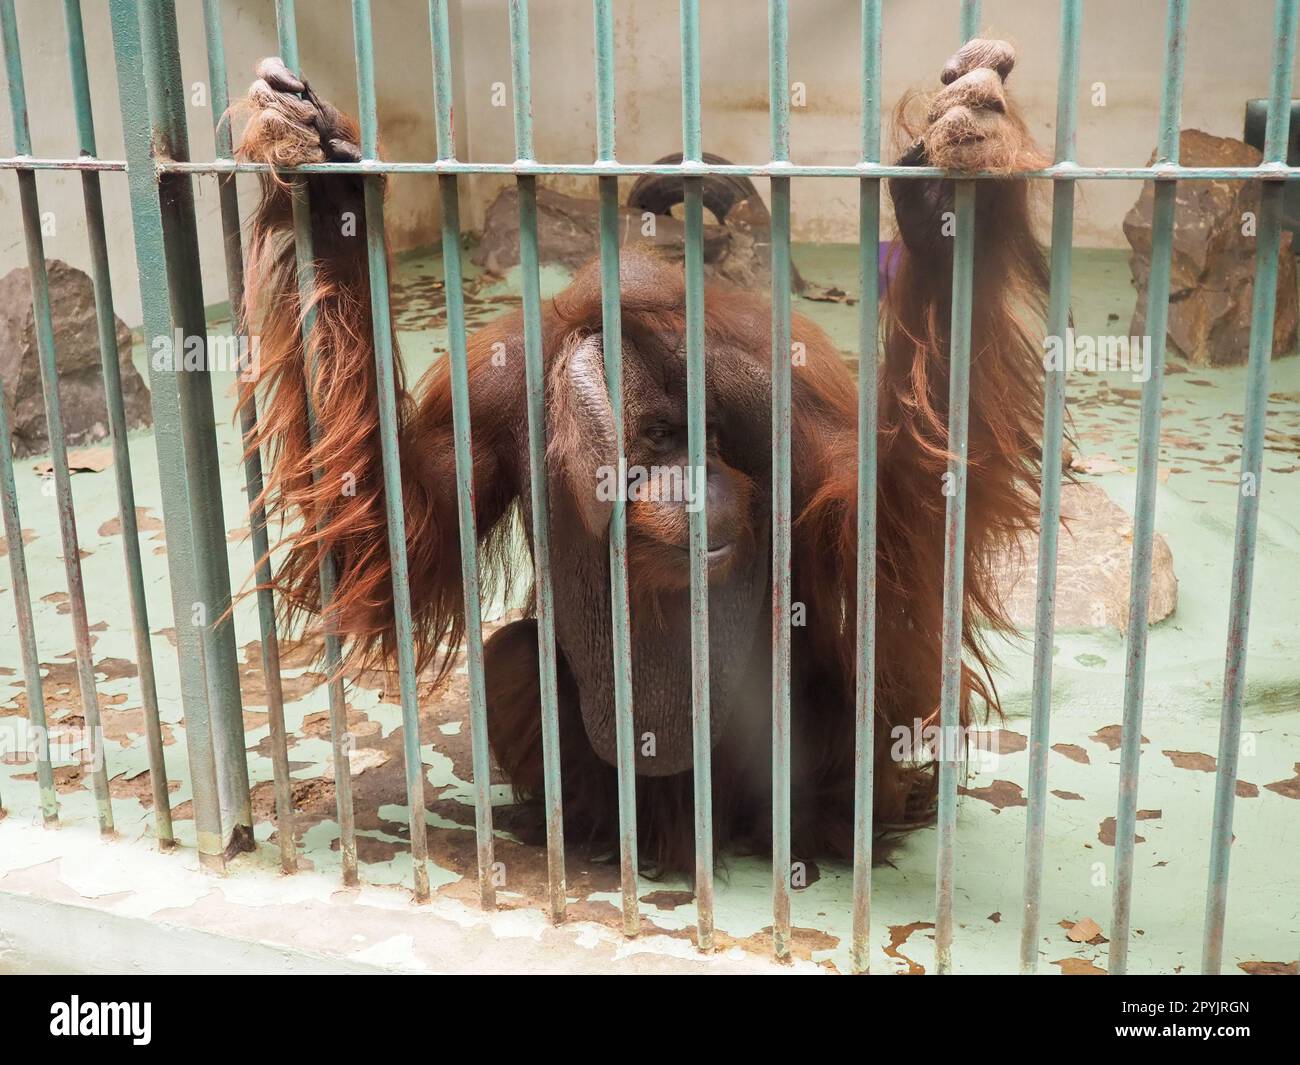 Un orangotango molto triste dietro le sbarre. Una scimmia con i capelli rossi siede e anelica. Orangutani, orangutan è un uomo della foresta, Pongo è un genere di scimmie arboree, una delle più vicine agli esseri umani nell'omologia del DNA. Foto Stock